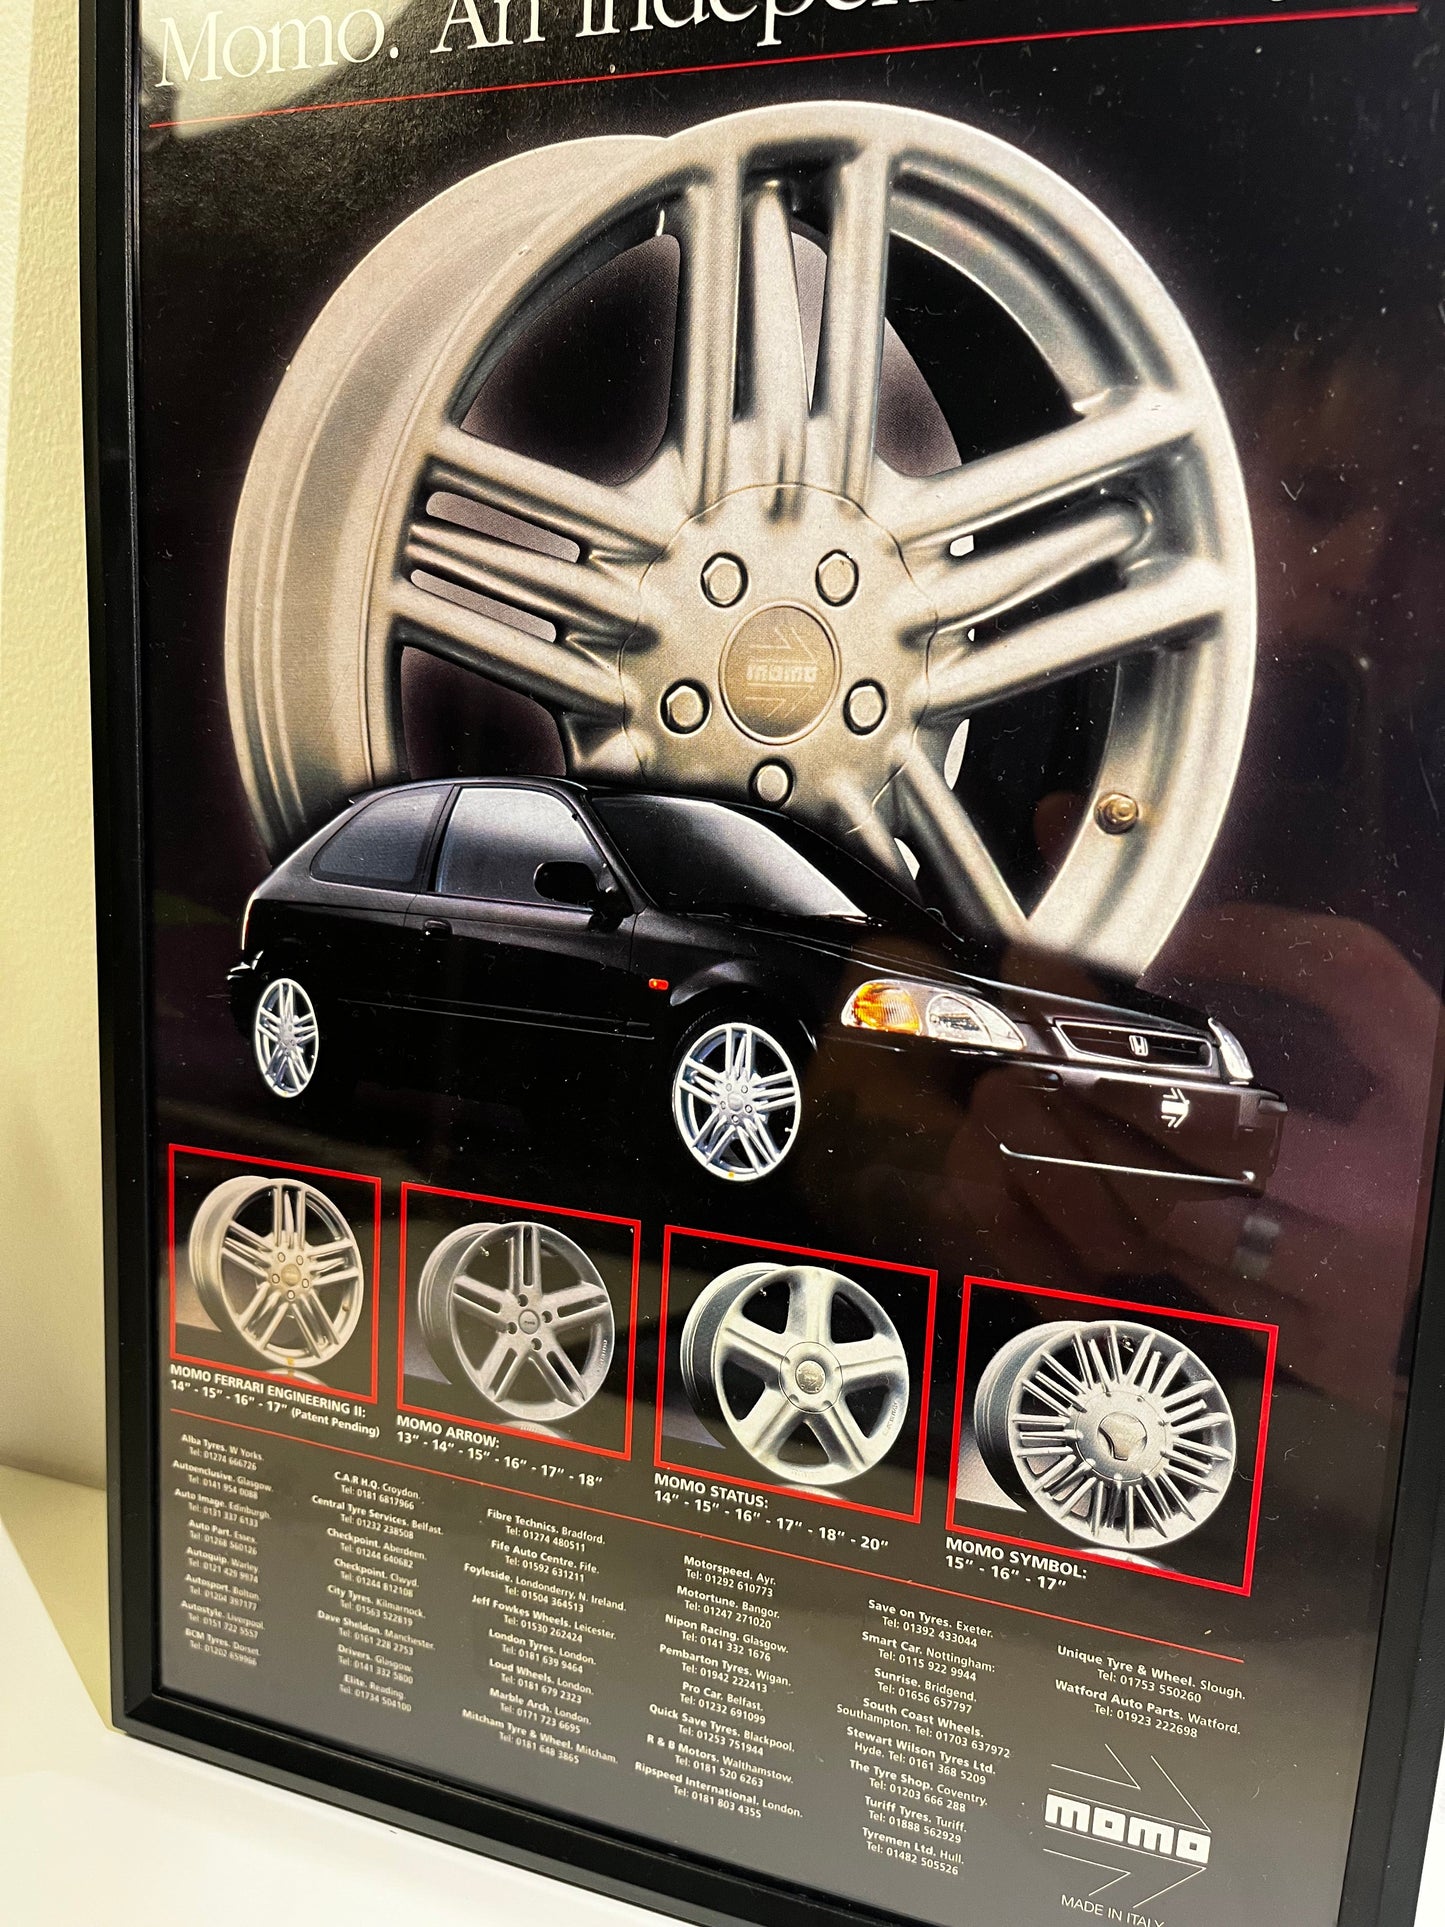 Rare Original 90s Honda Civic Advert Poster